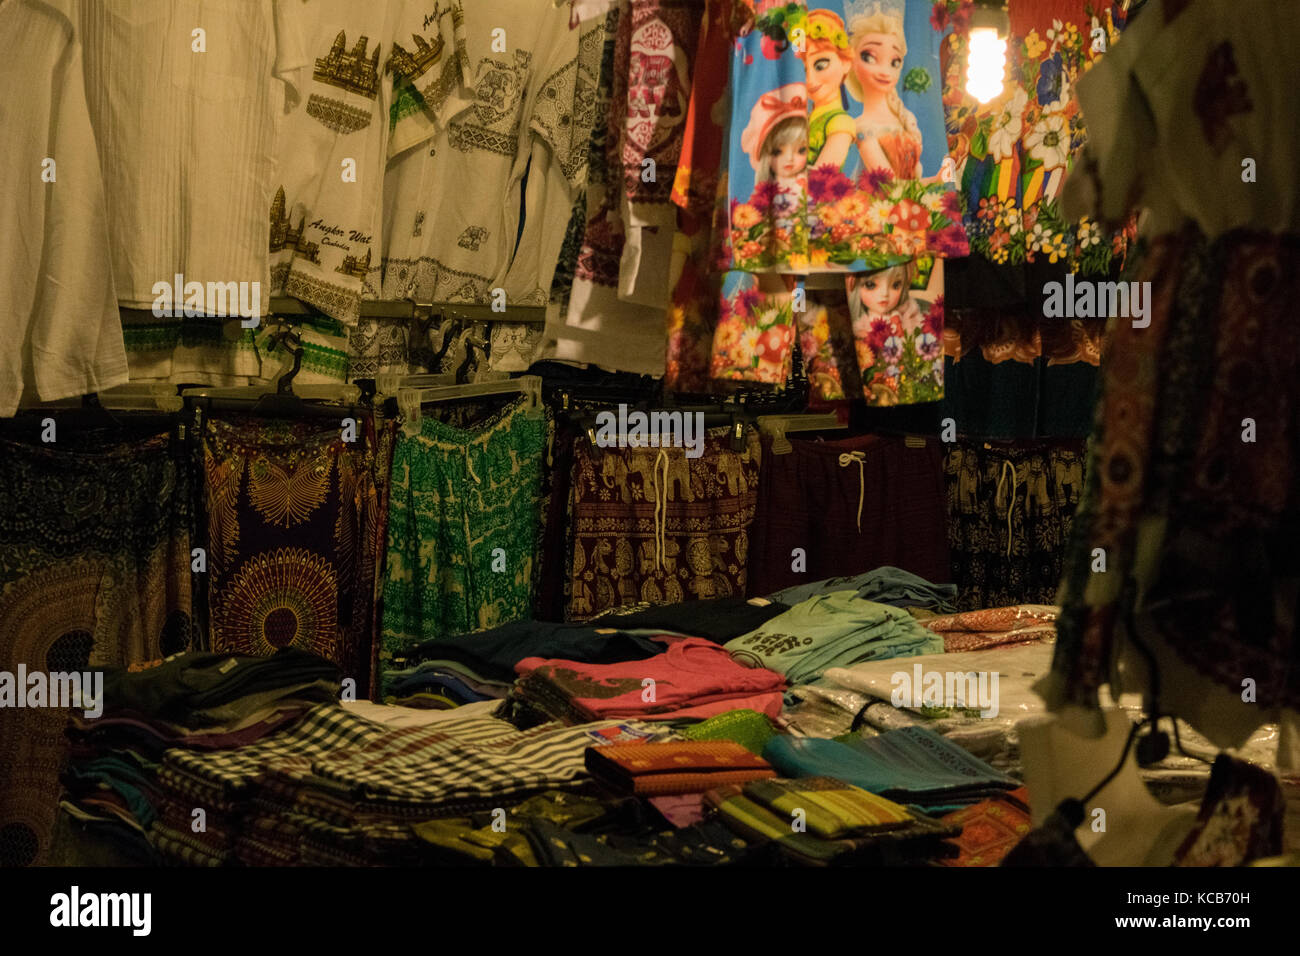 Eine Kleidung an der Phnom Penh nacht Marktstand. Frauen Kleidung mit verschiedenen Farben und ethnischen Mustern. Günstige Preise. Kambodscha, Südostasien Stockfoto